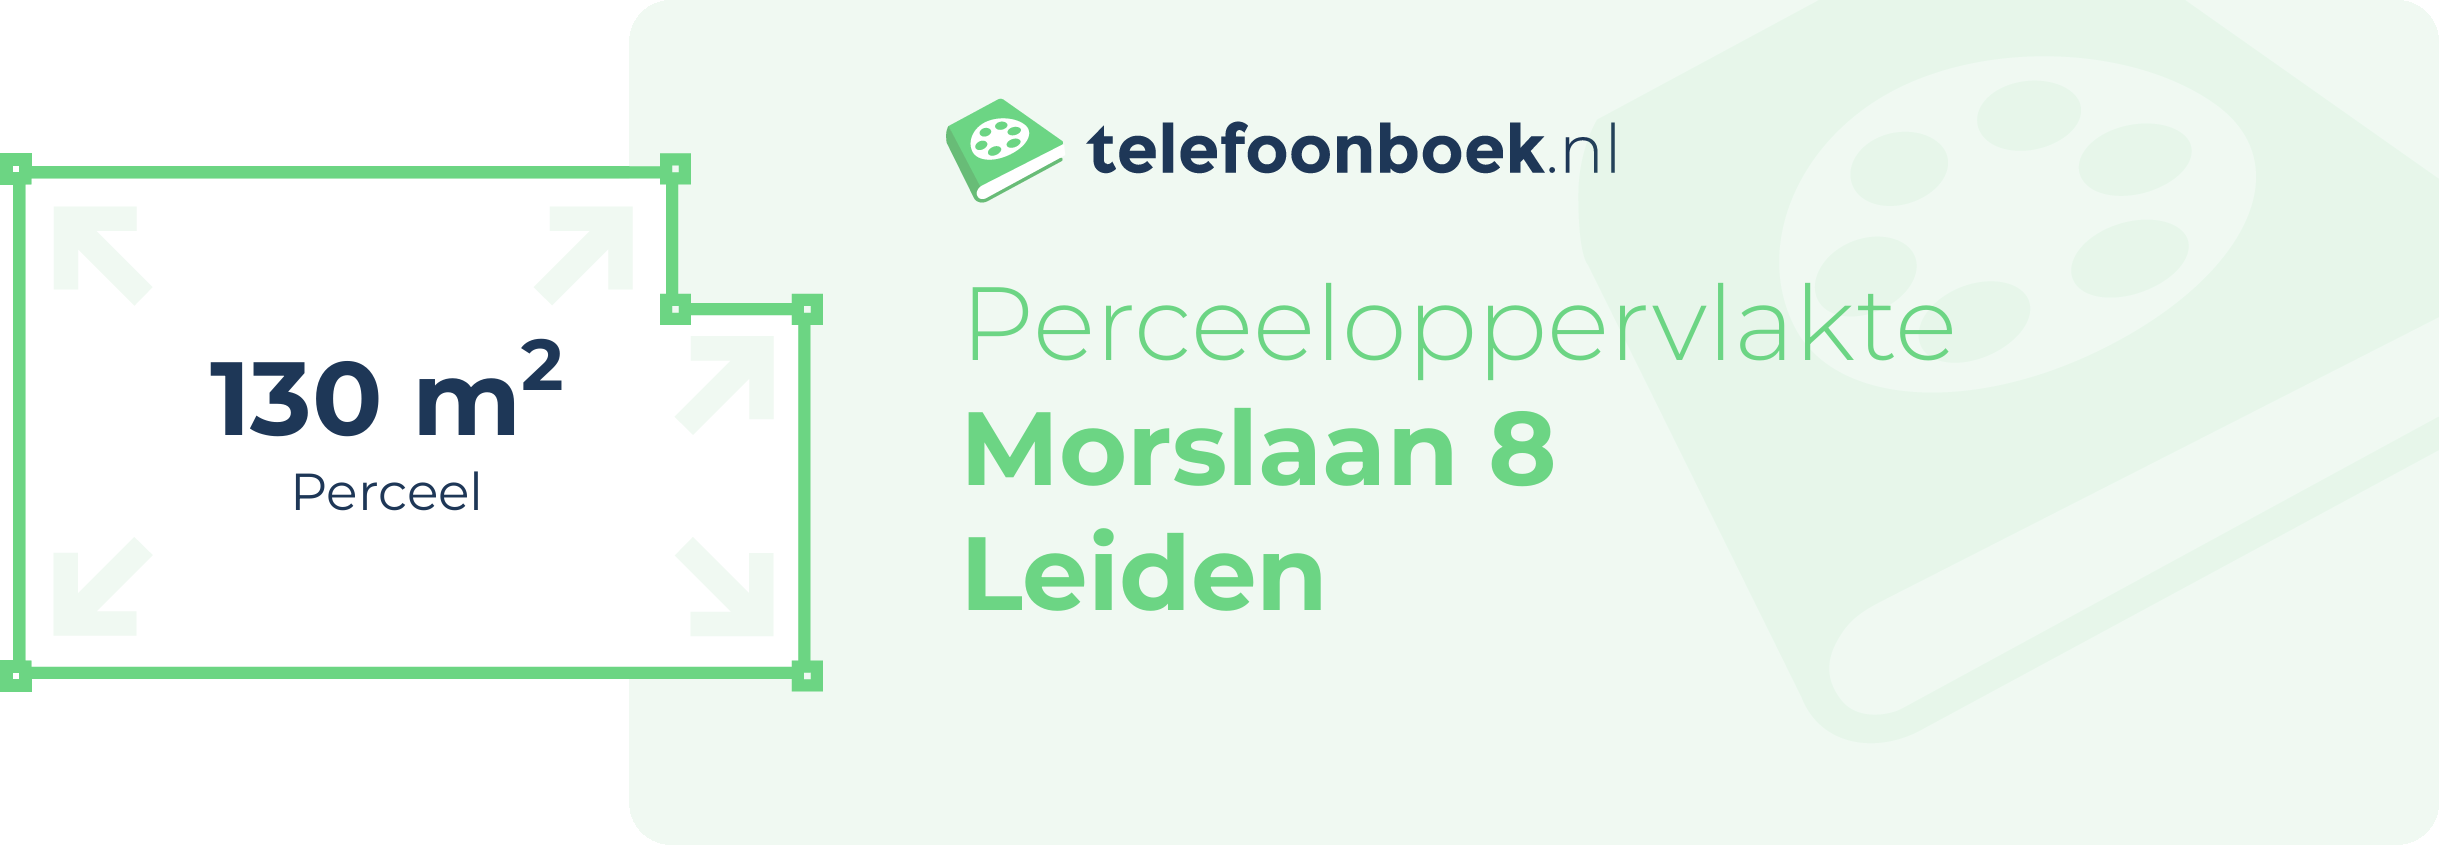 Perceeloppervlakte Morslaan 8 Leiden